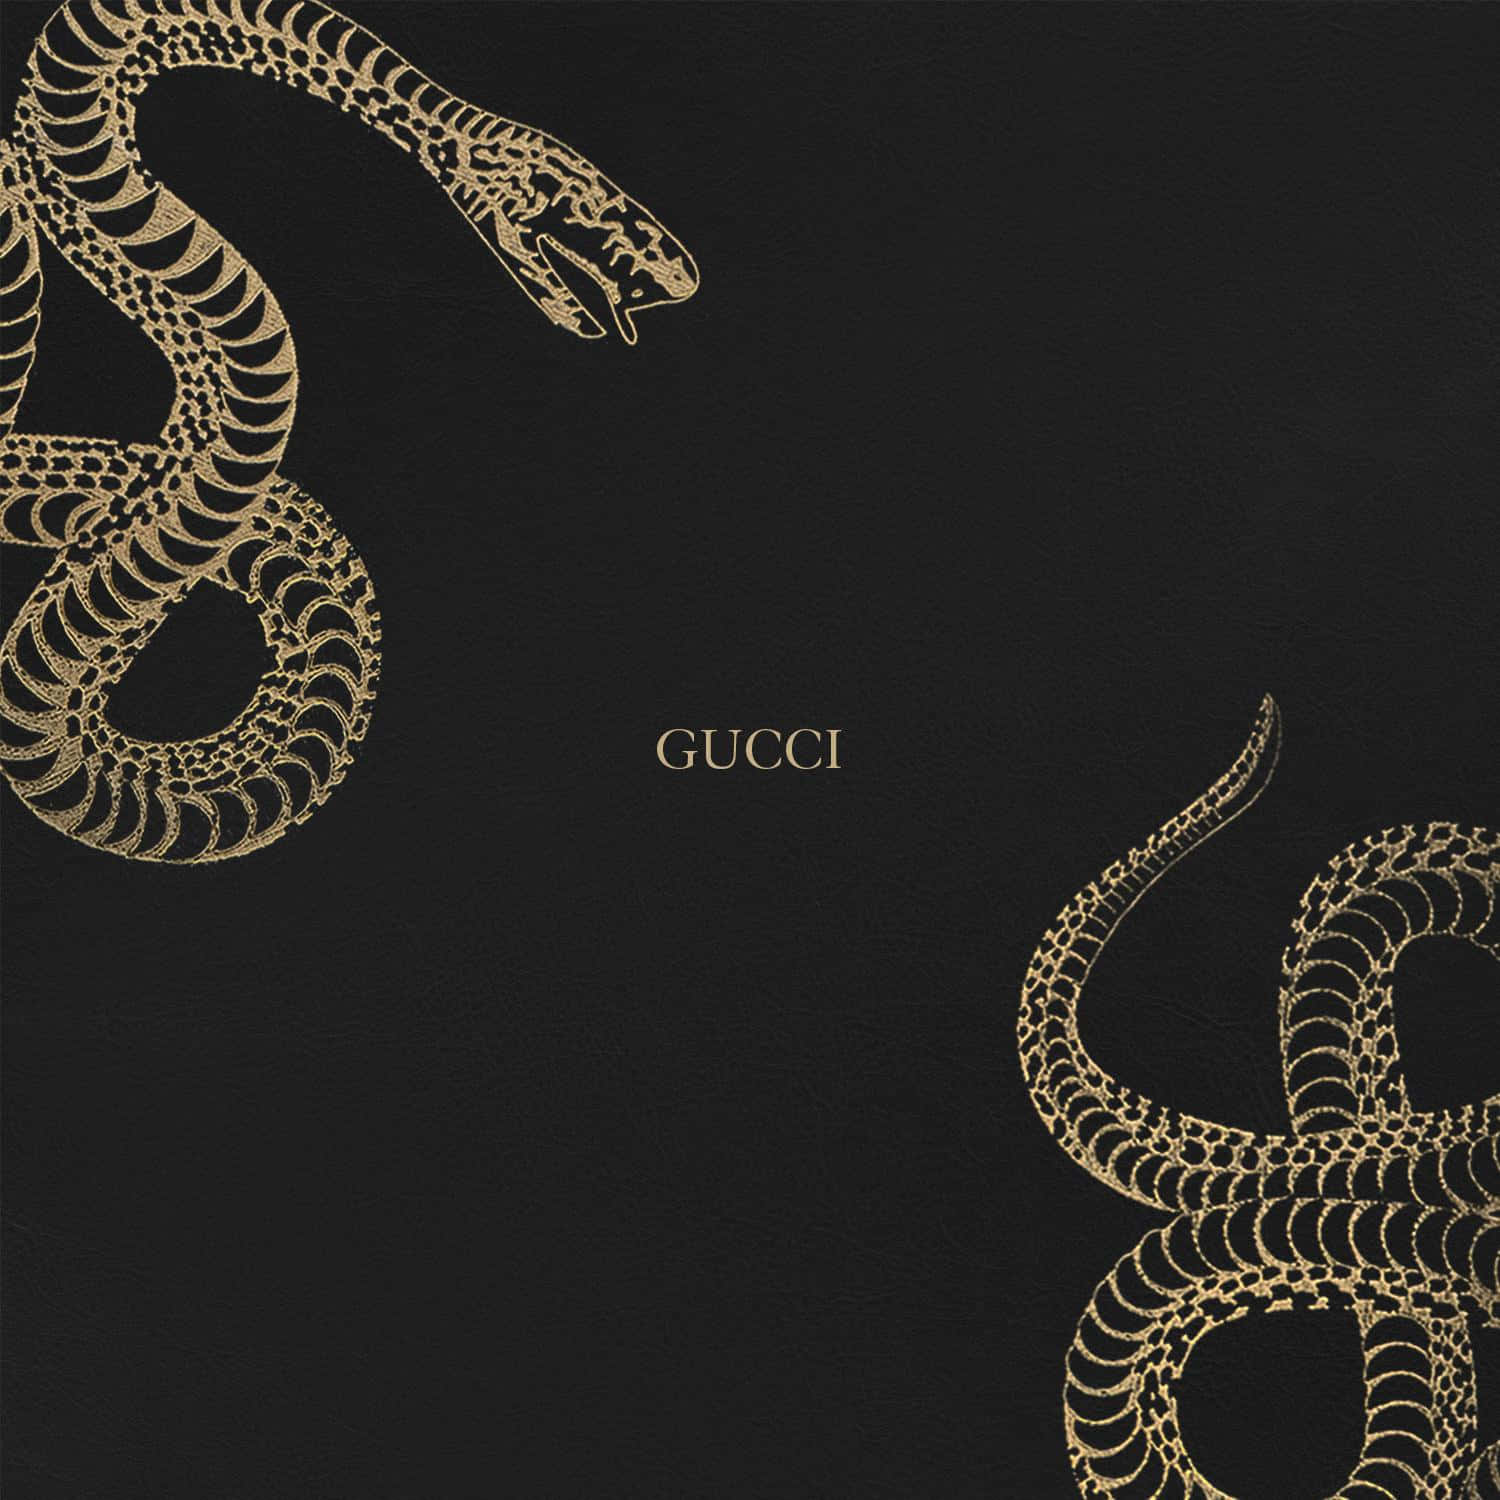 Tollesschlangenmuster Im Hintergrund Mit Gucci-schriftzug